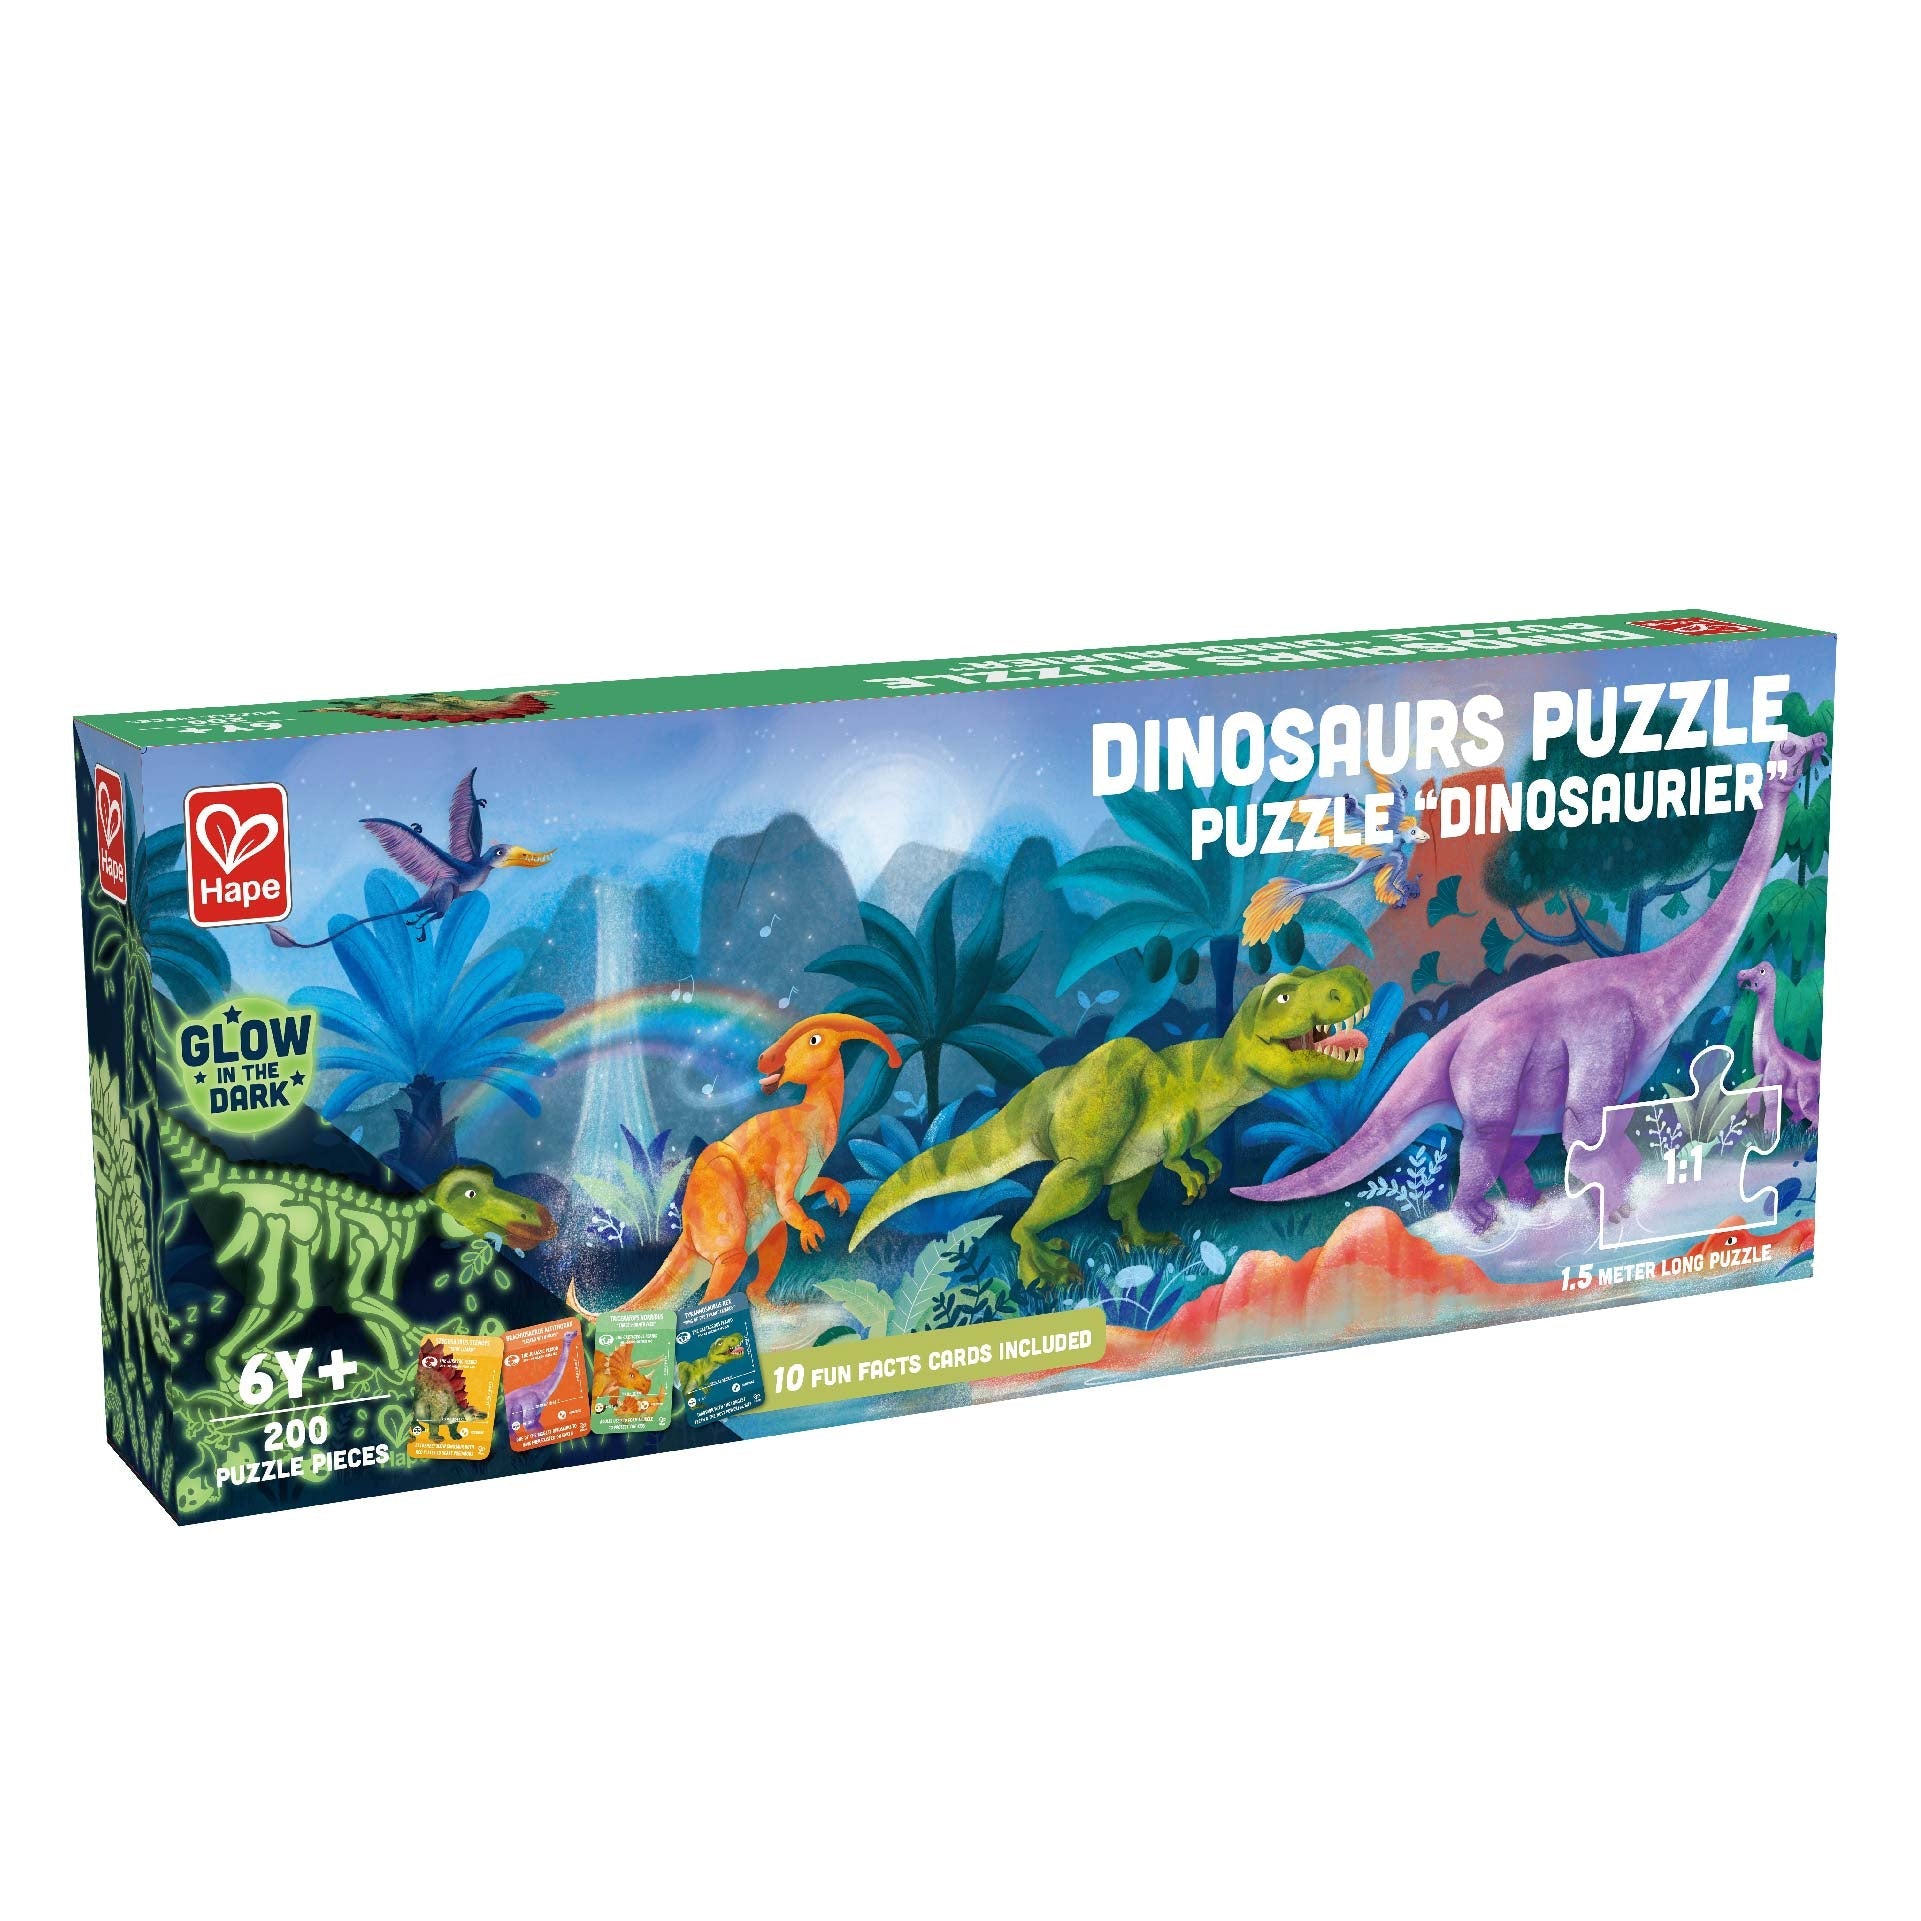 Hape Dinosaurs Puzzle 200 Pieces Colorful Giant Dinosaurs long puzzle